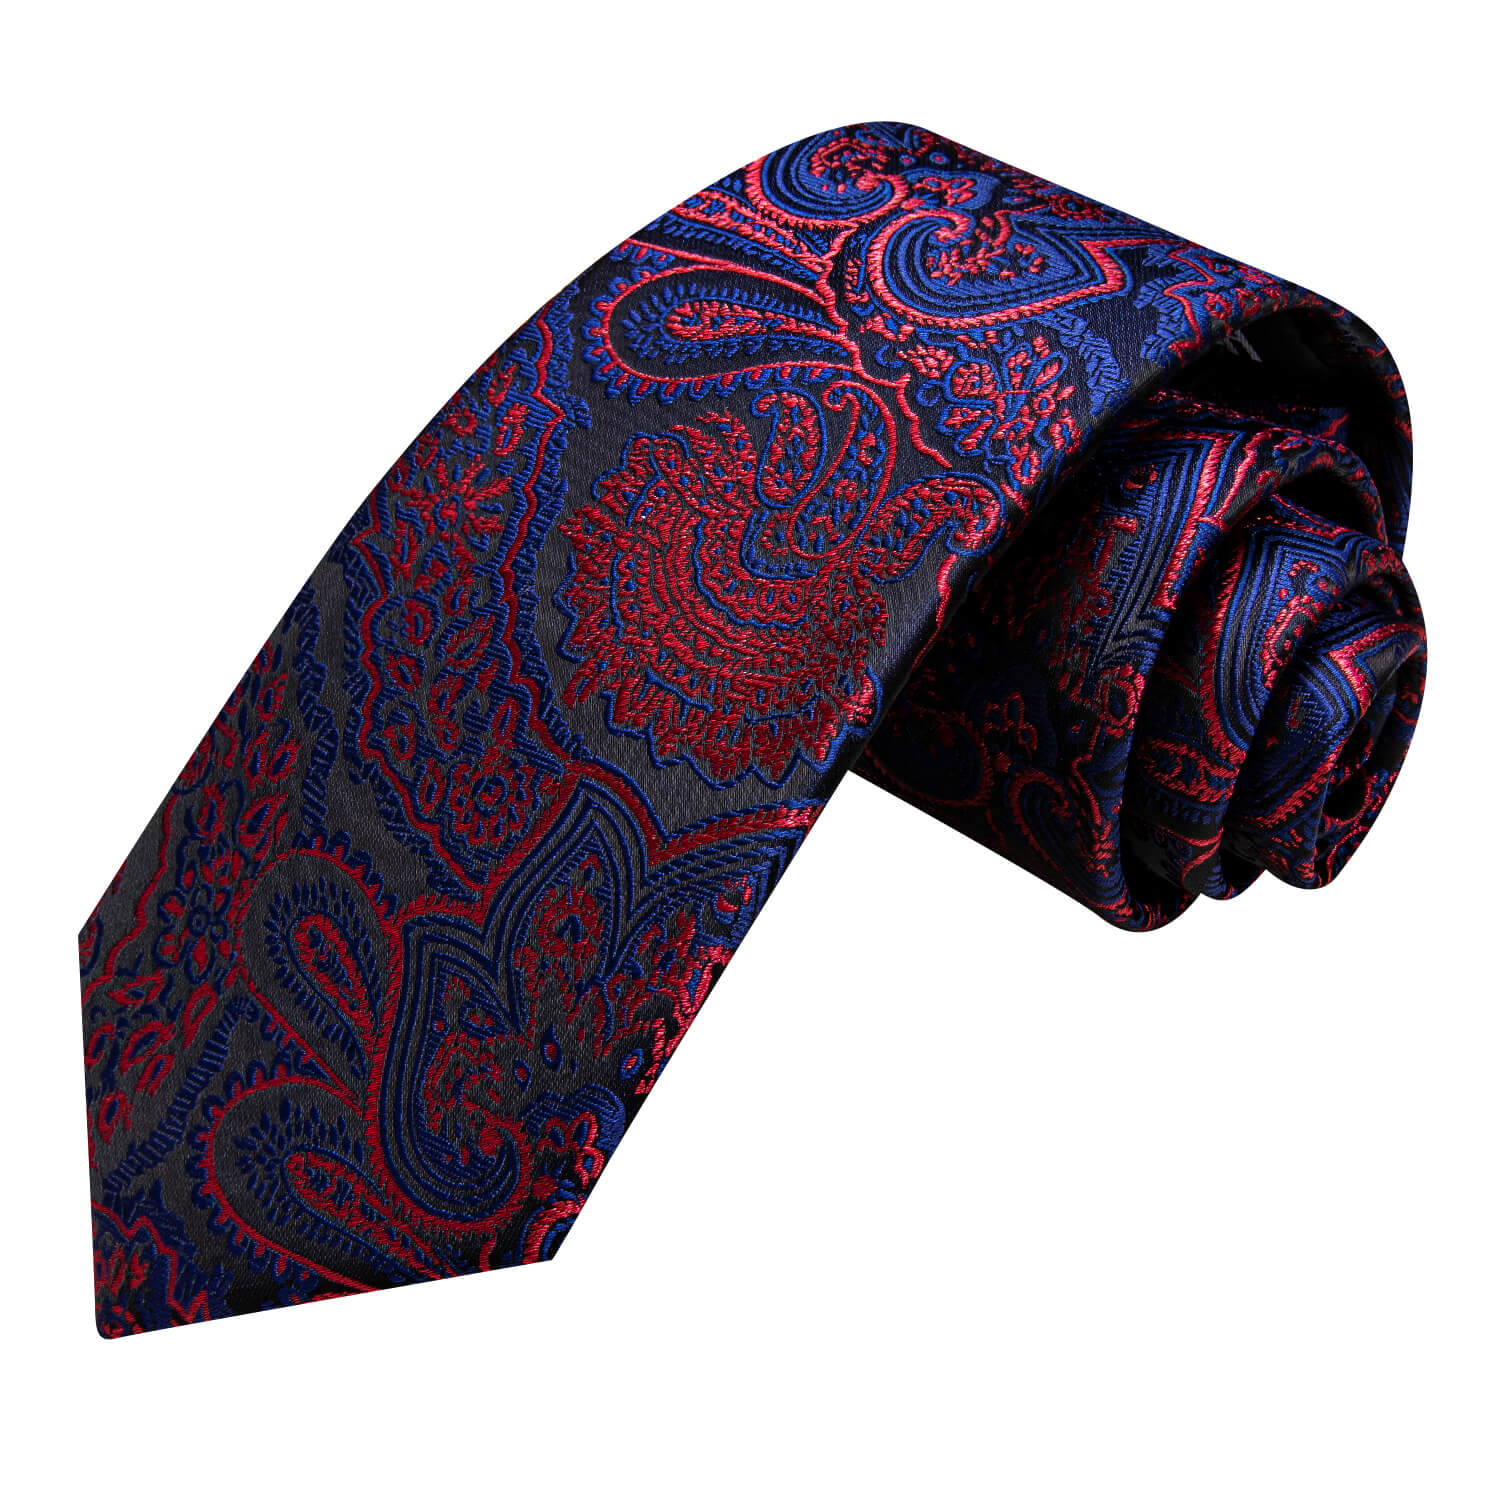  Paisley Tie Blue Red Silk Necktie for Men